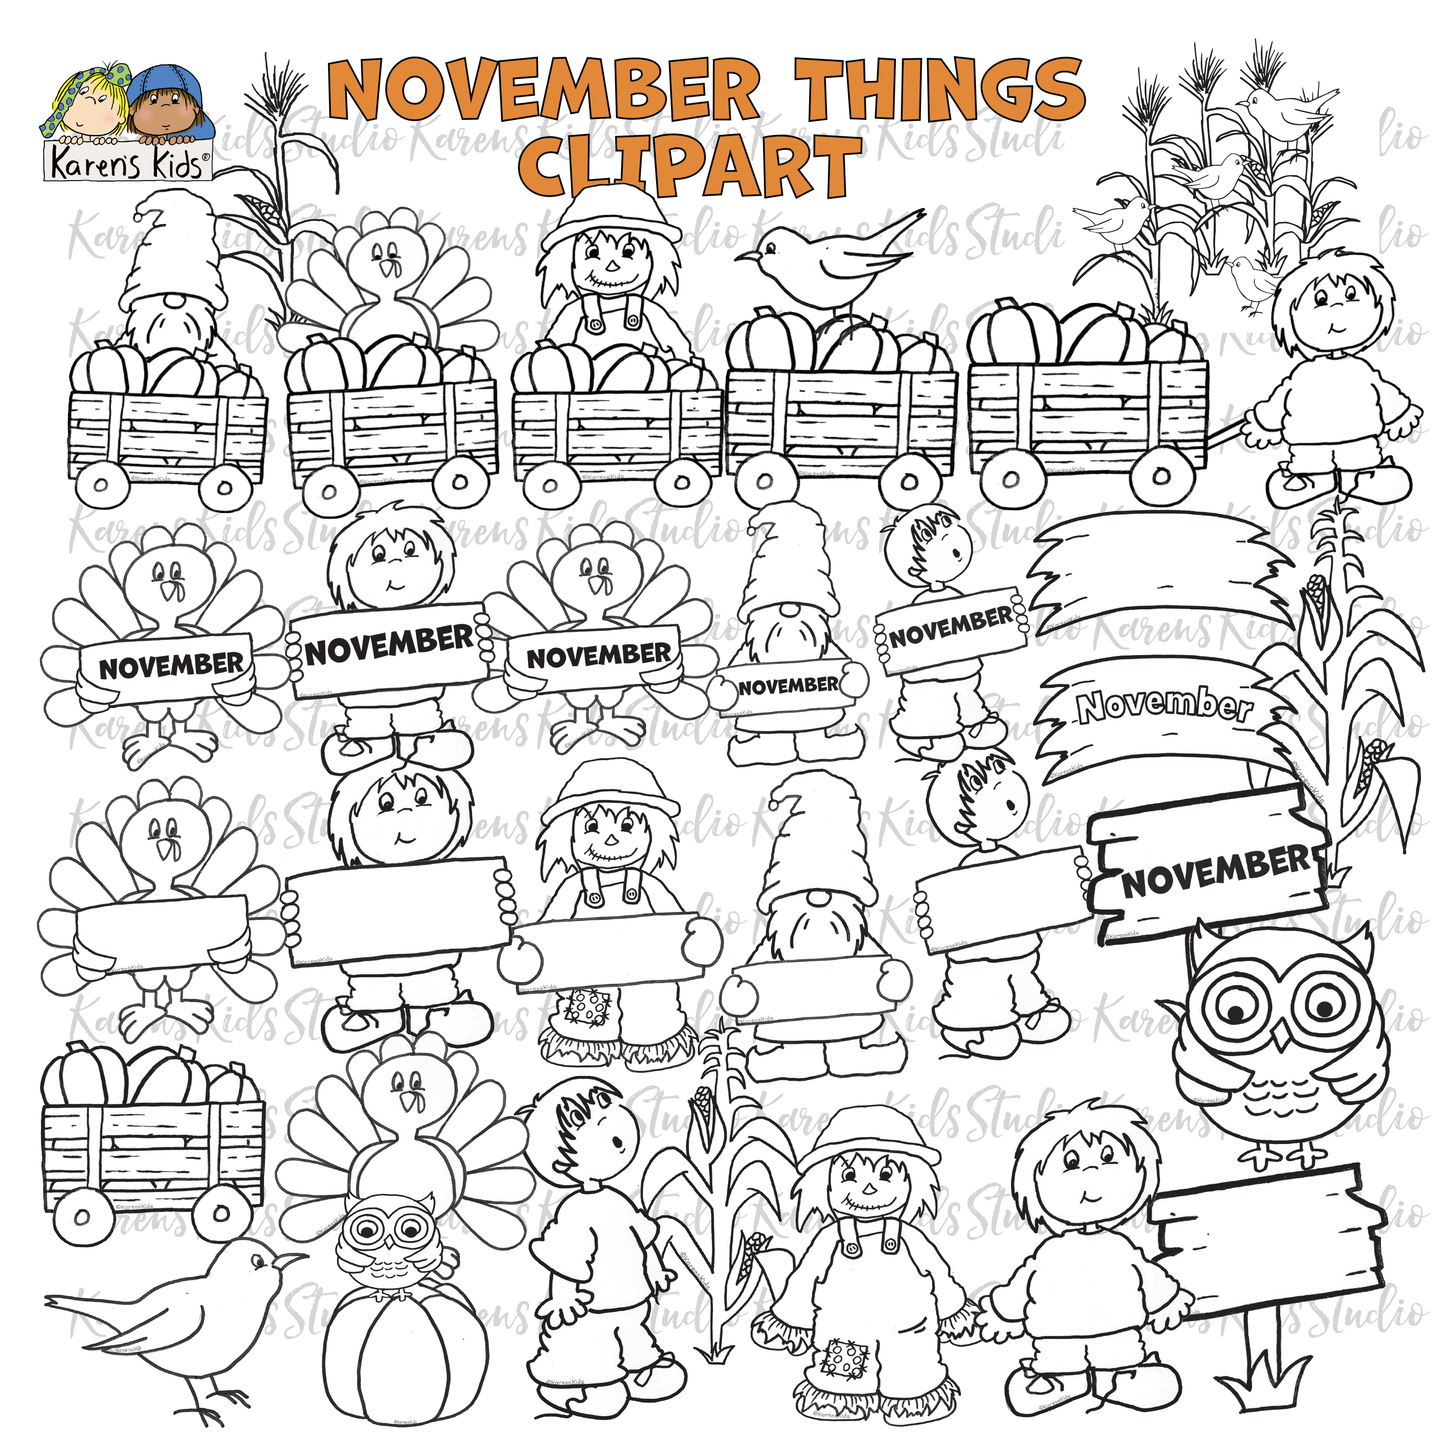 November Things Clipart (Karen's Kids Clipart)